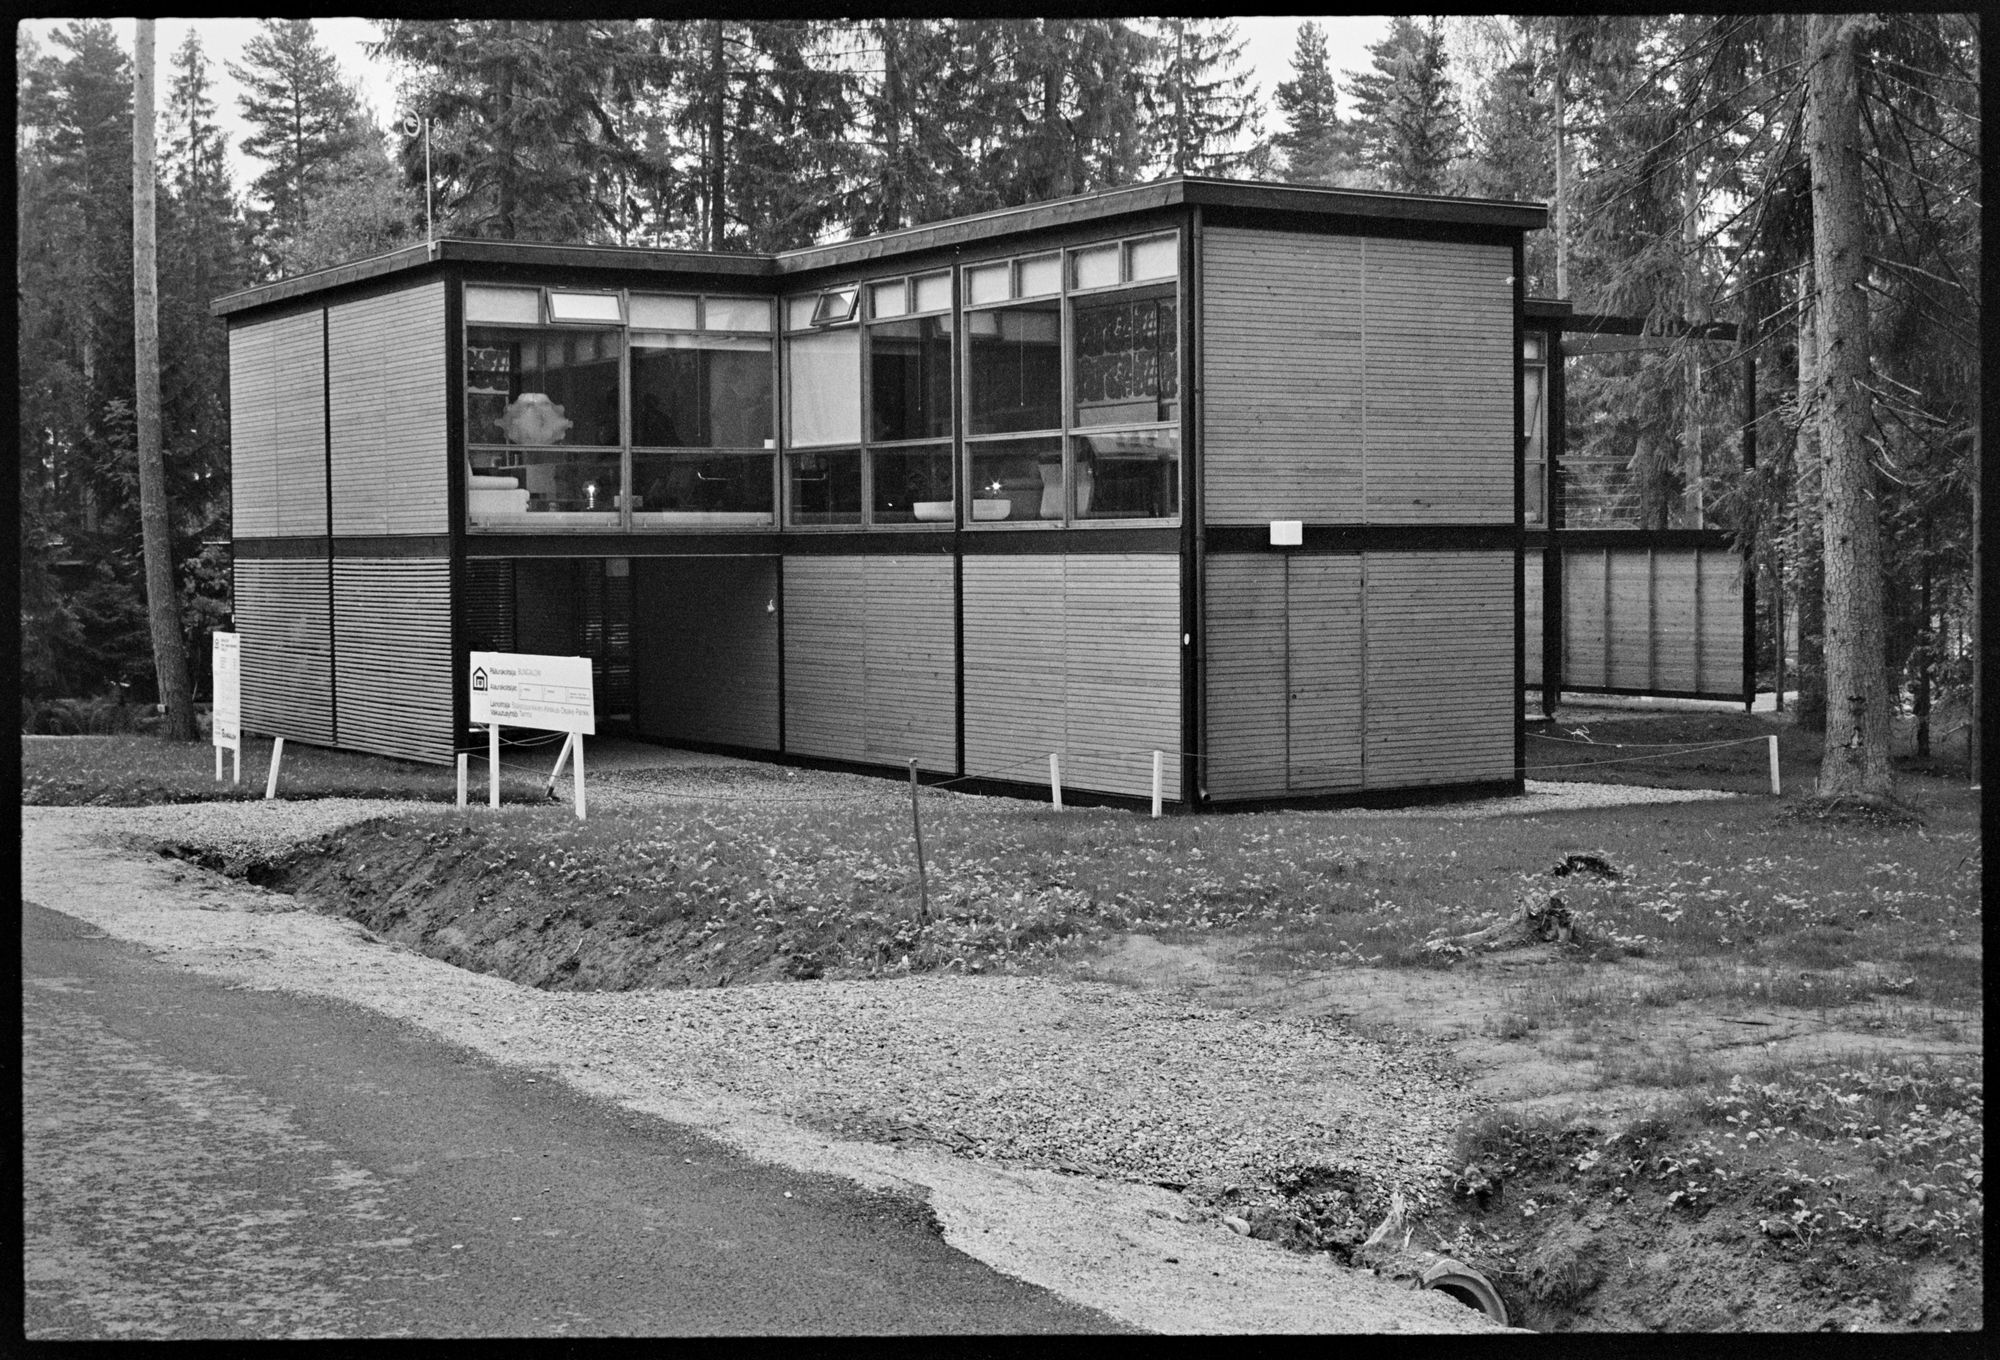 Bungalow-talotyyppi oli uusinta uutta ensimmäisillä asuntomessuilla Tuusulan Lahelassa 1970. 